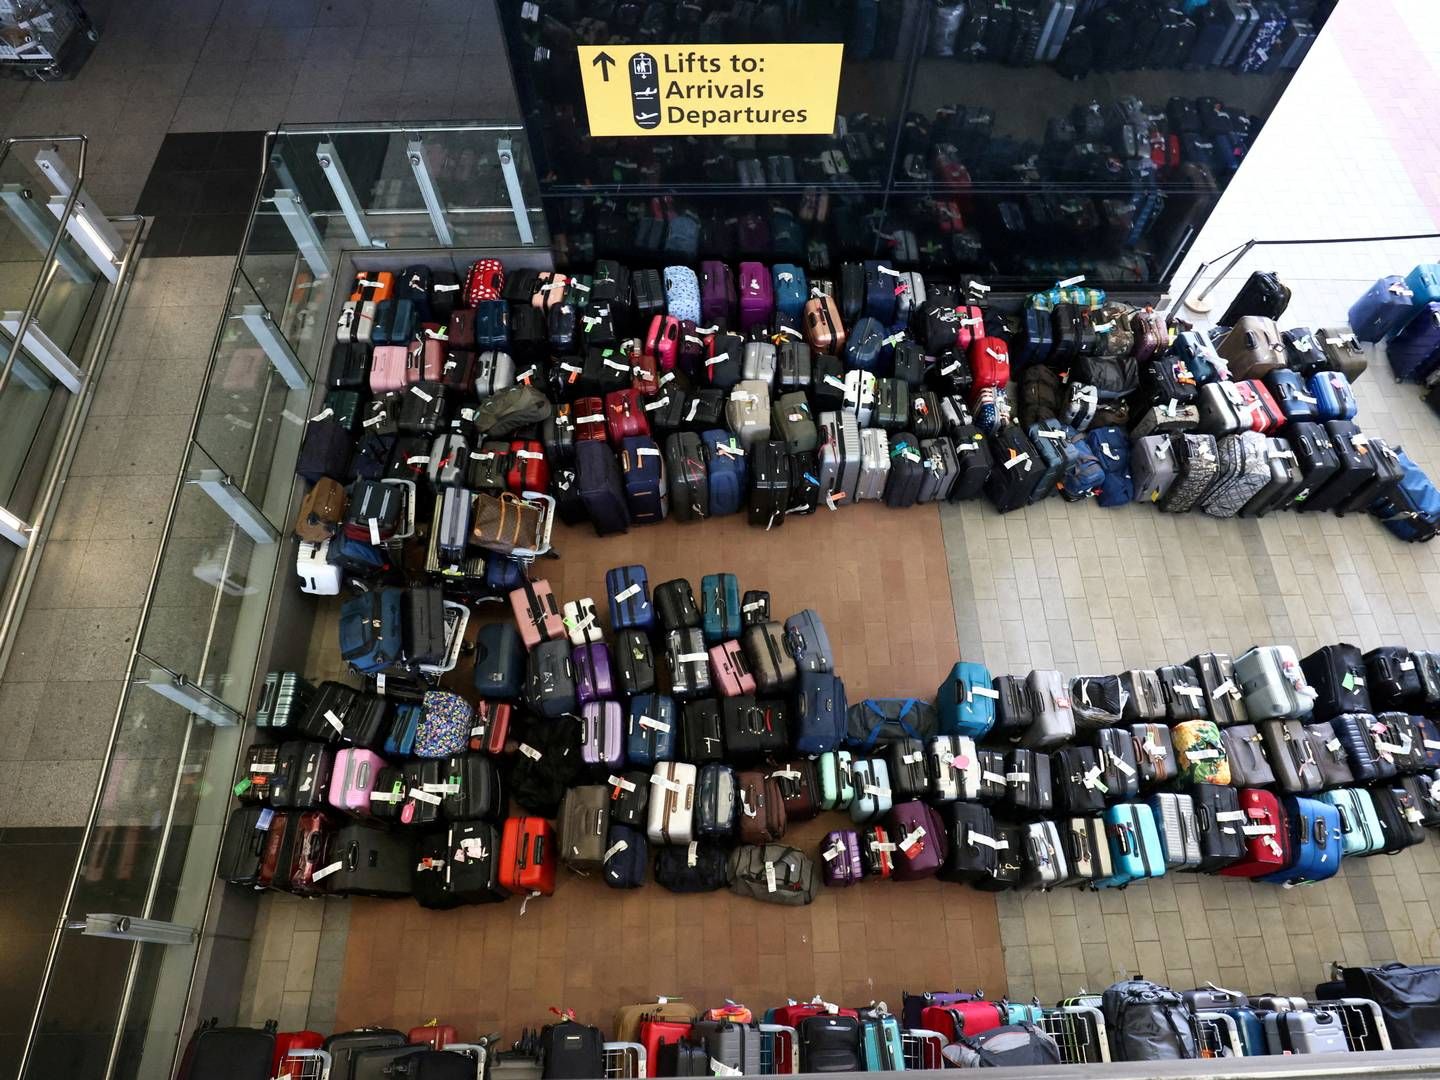 Bagage linet op ved terminal 2 i Heathrow lufthavn, hvor der har været massive problemer bl.a. som følge af personalemangel. | Foto: Henry Nicholls/Reuters/Ritzau Scanpix